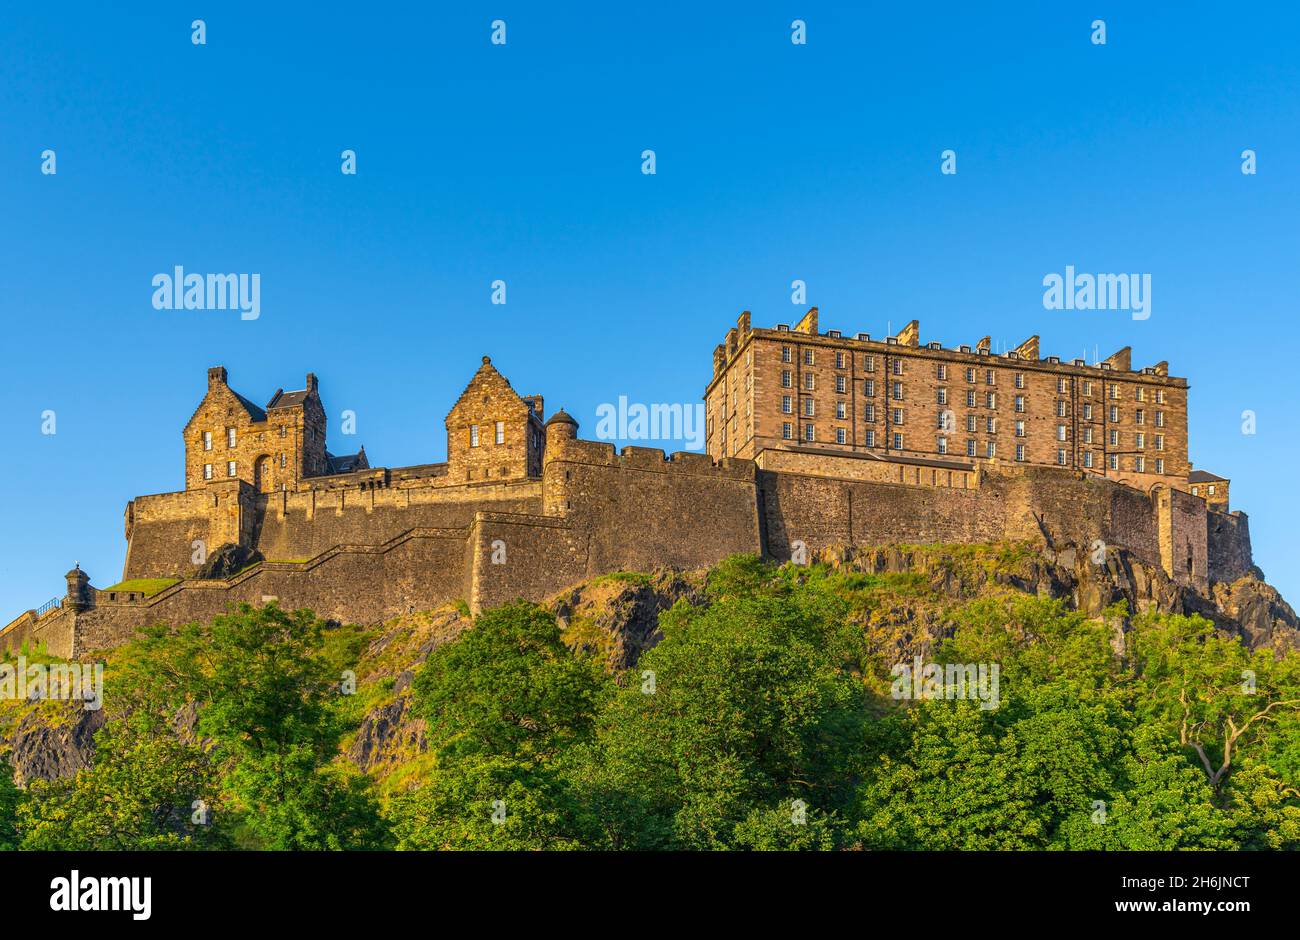 Blick auf das Edinburgh Castle von der Princes Street bei Sonnenuntergang, UNESCO-Weltkulturerbe, Edinburgh, Schottland, Vereinigtes Königreich, Europa Stockfoto